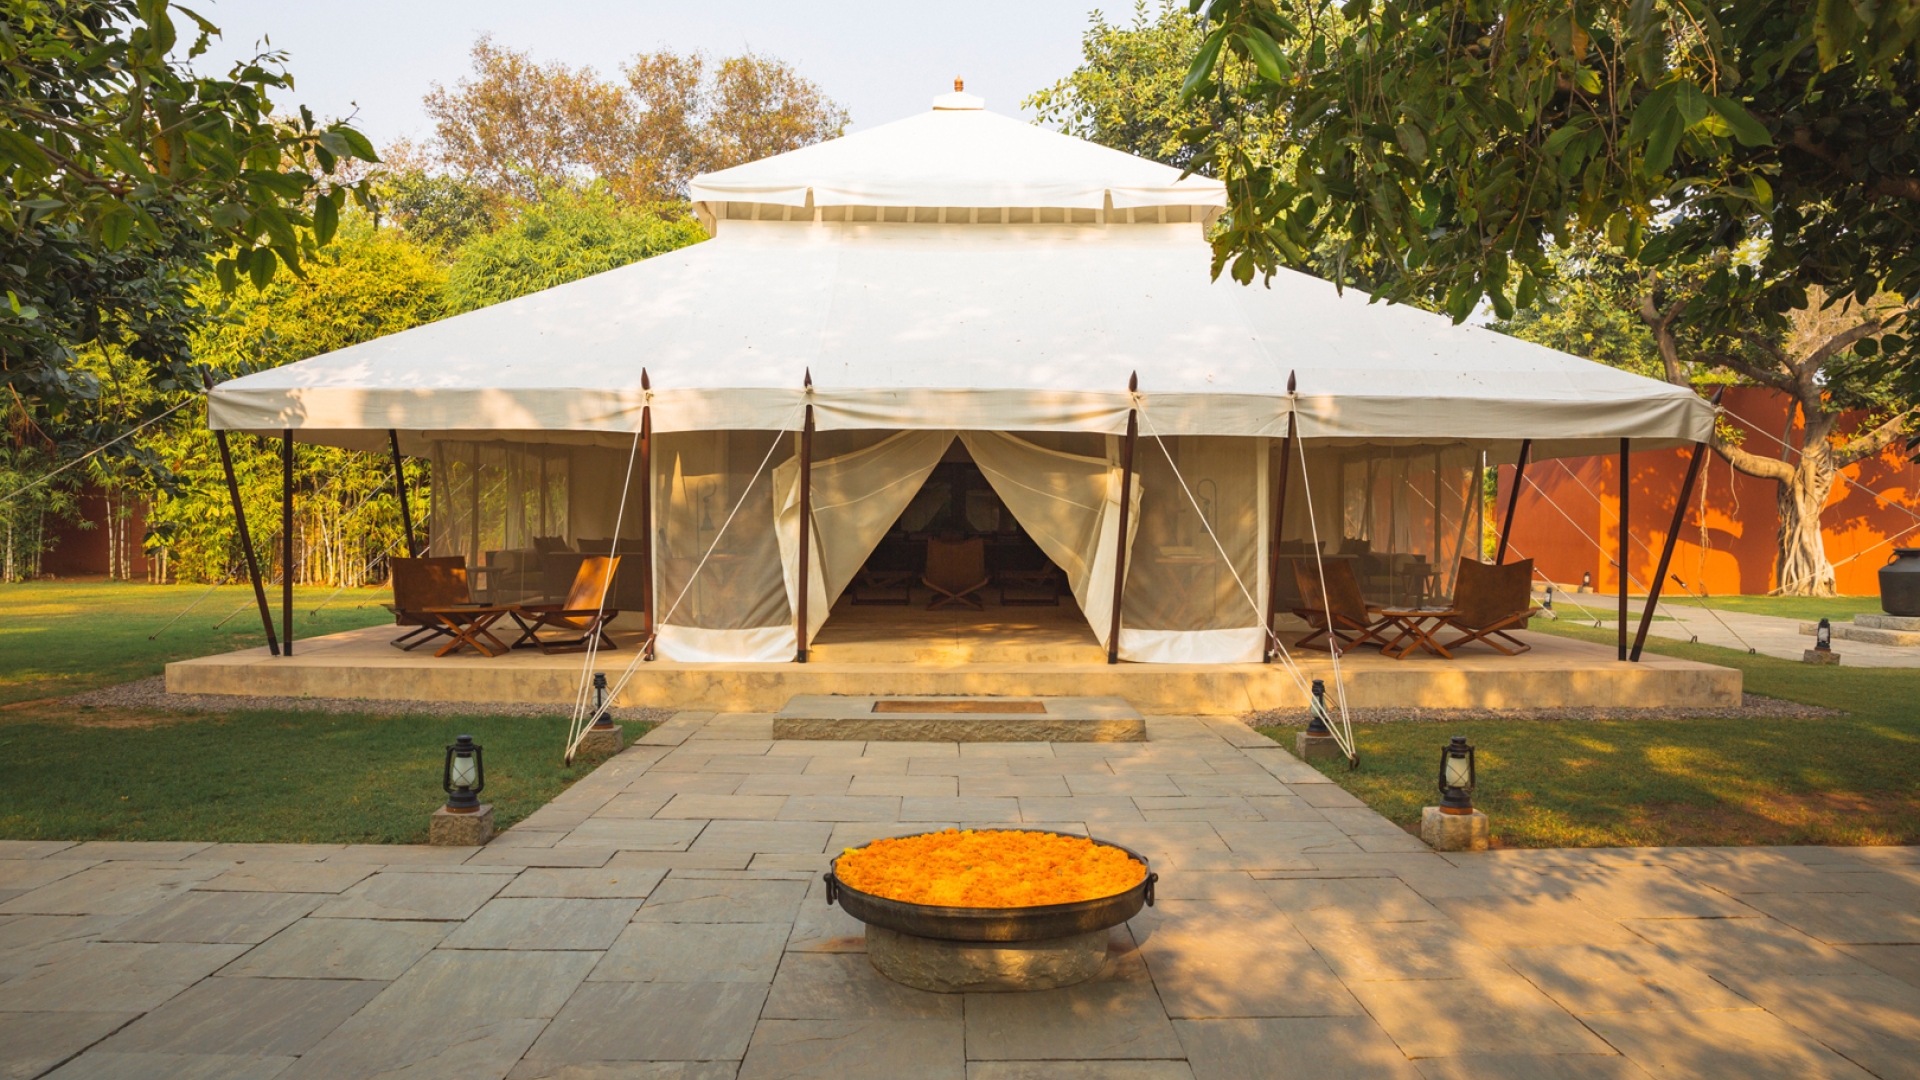 Aman-i-Khas-India-Lounge-Tent